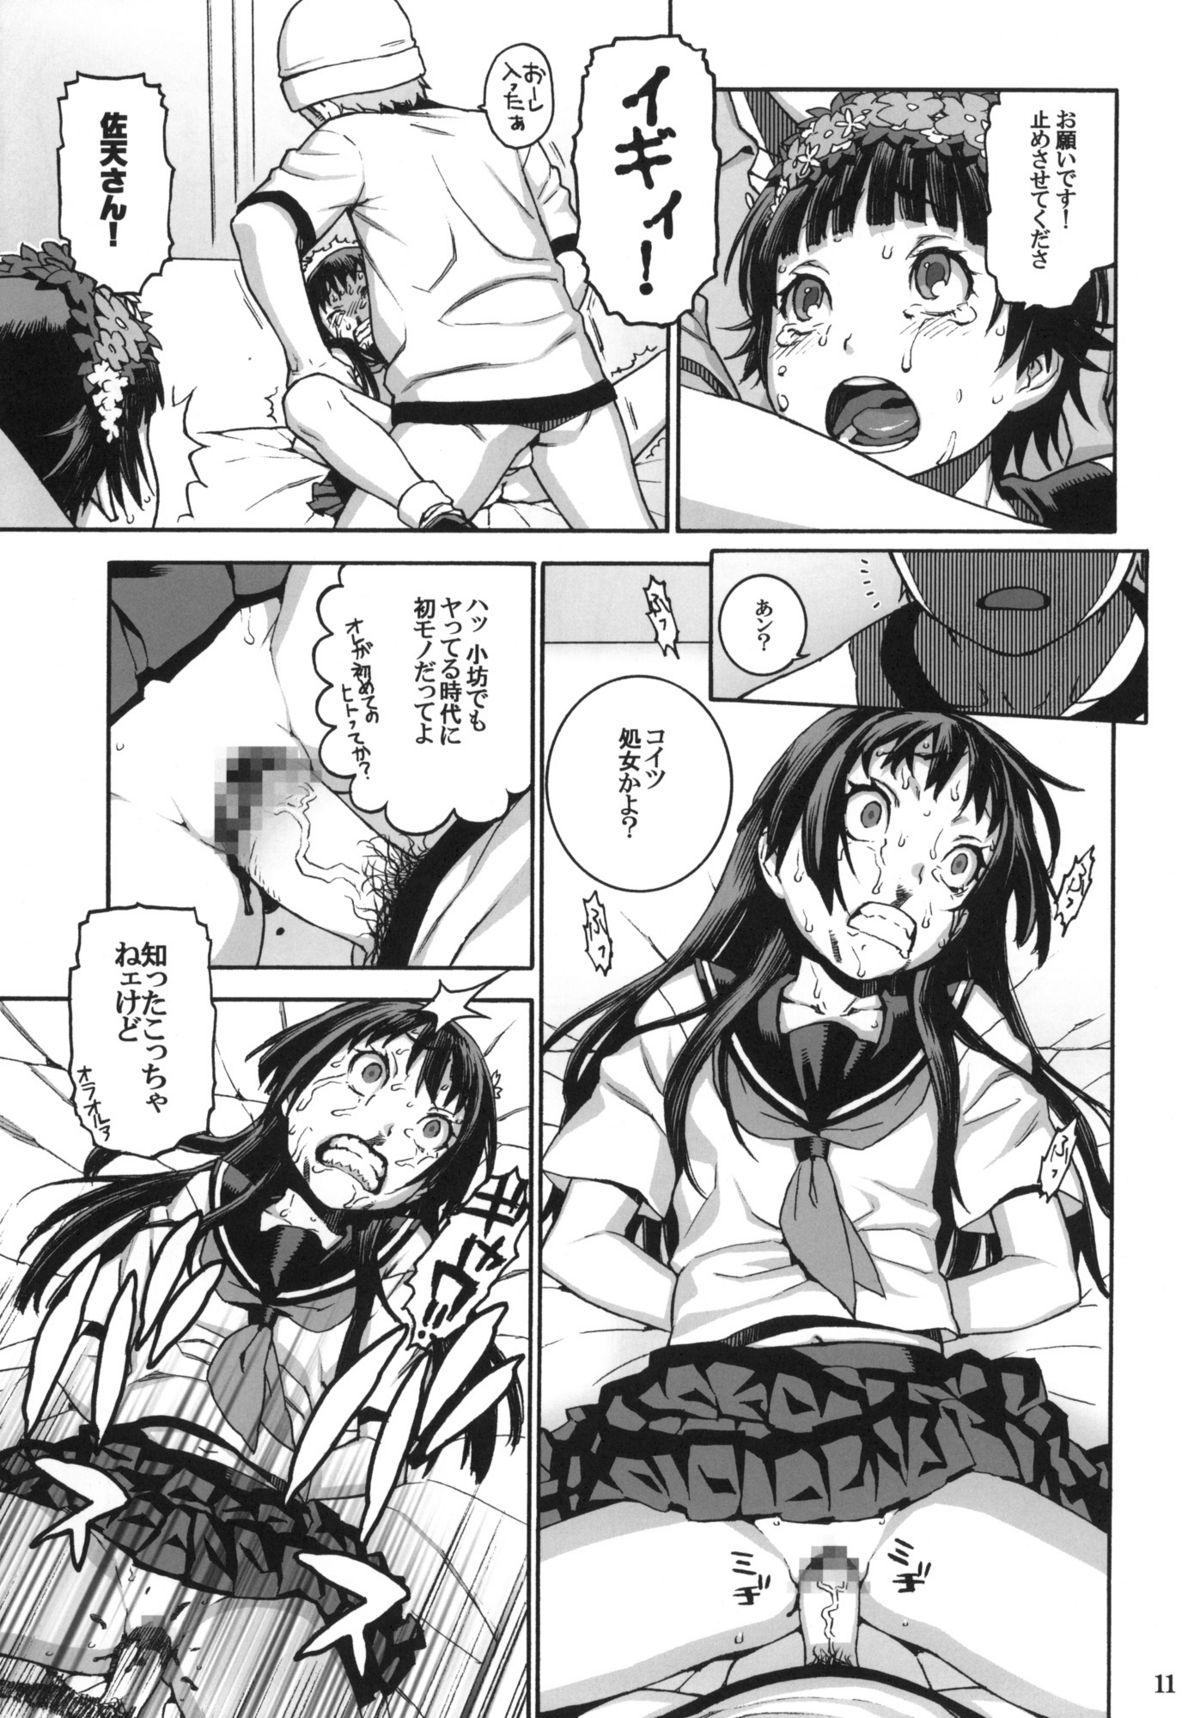 Sloppy Toaru Jiken no Heroines - Toaru kagaku no railgun Affair - Page 10